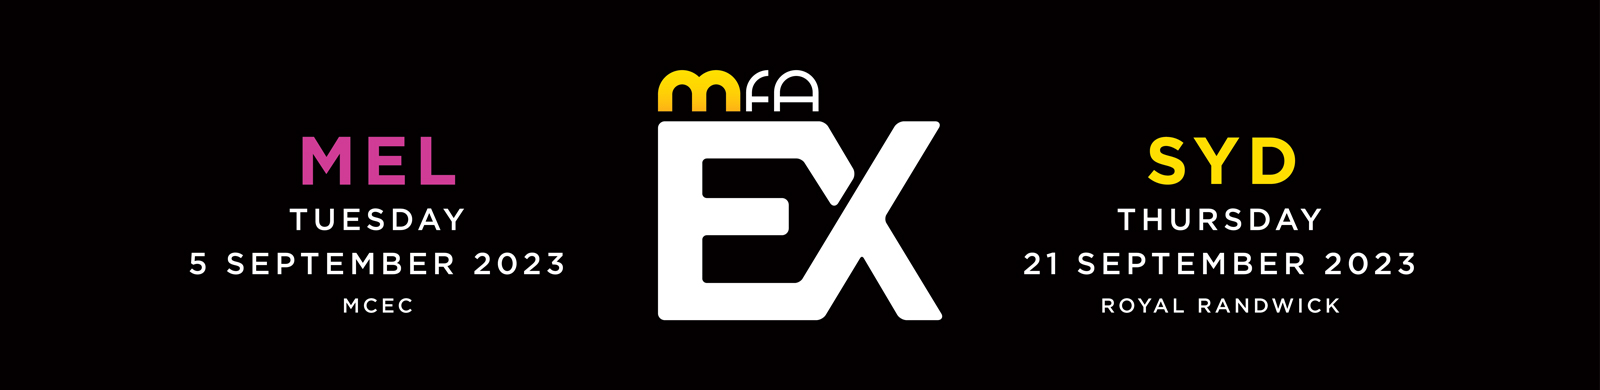 MFAEX_23_WebsiteSlider_1600x390px_MELSYD_DATES